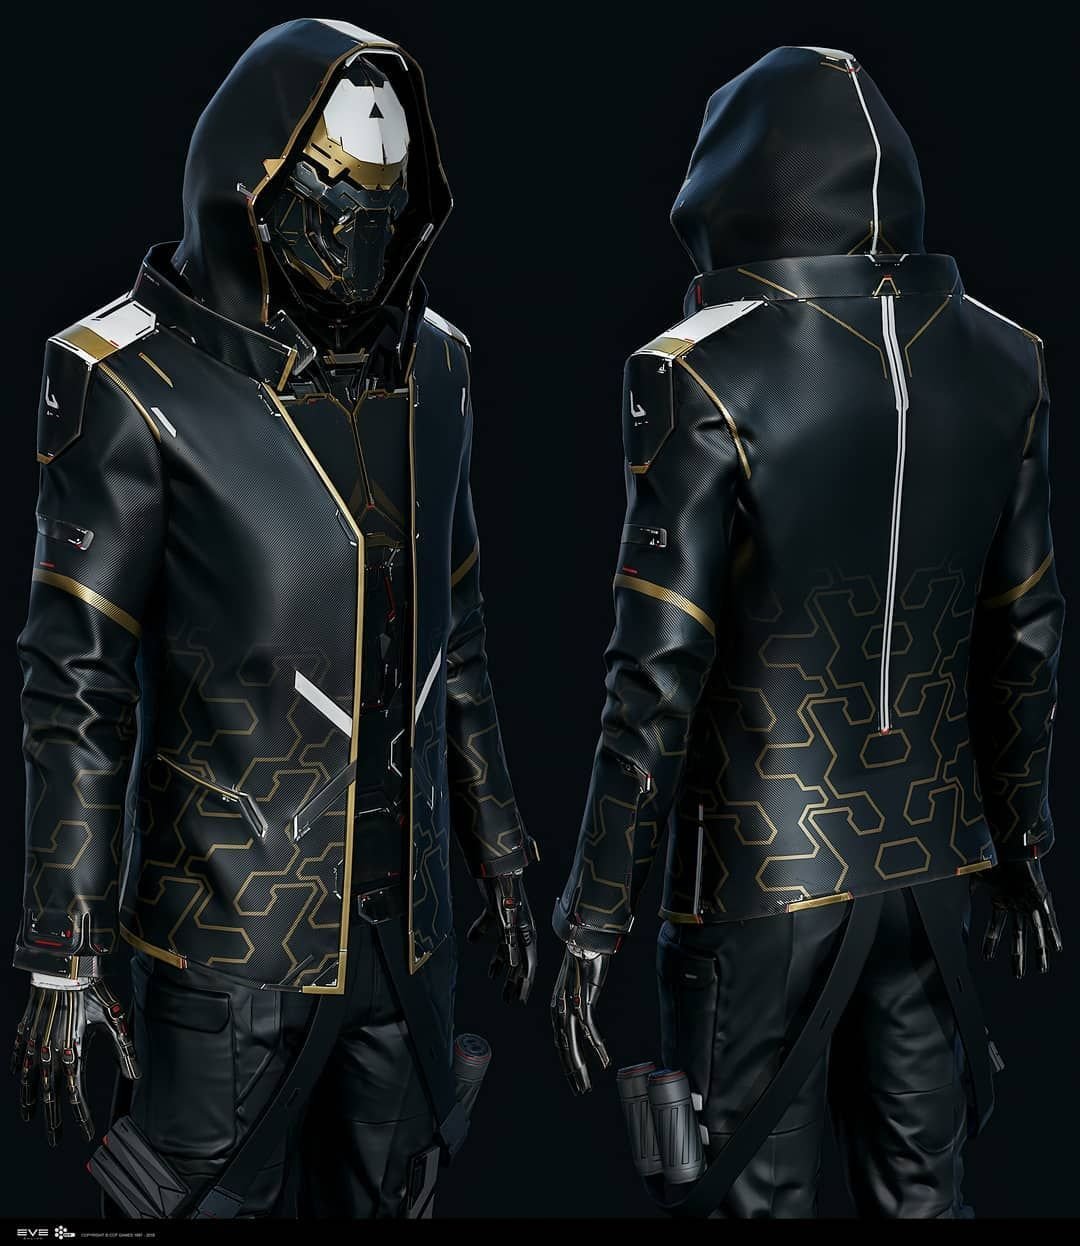 Cyberpunk стиль одежды мужской фото 63